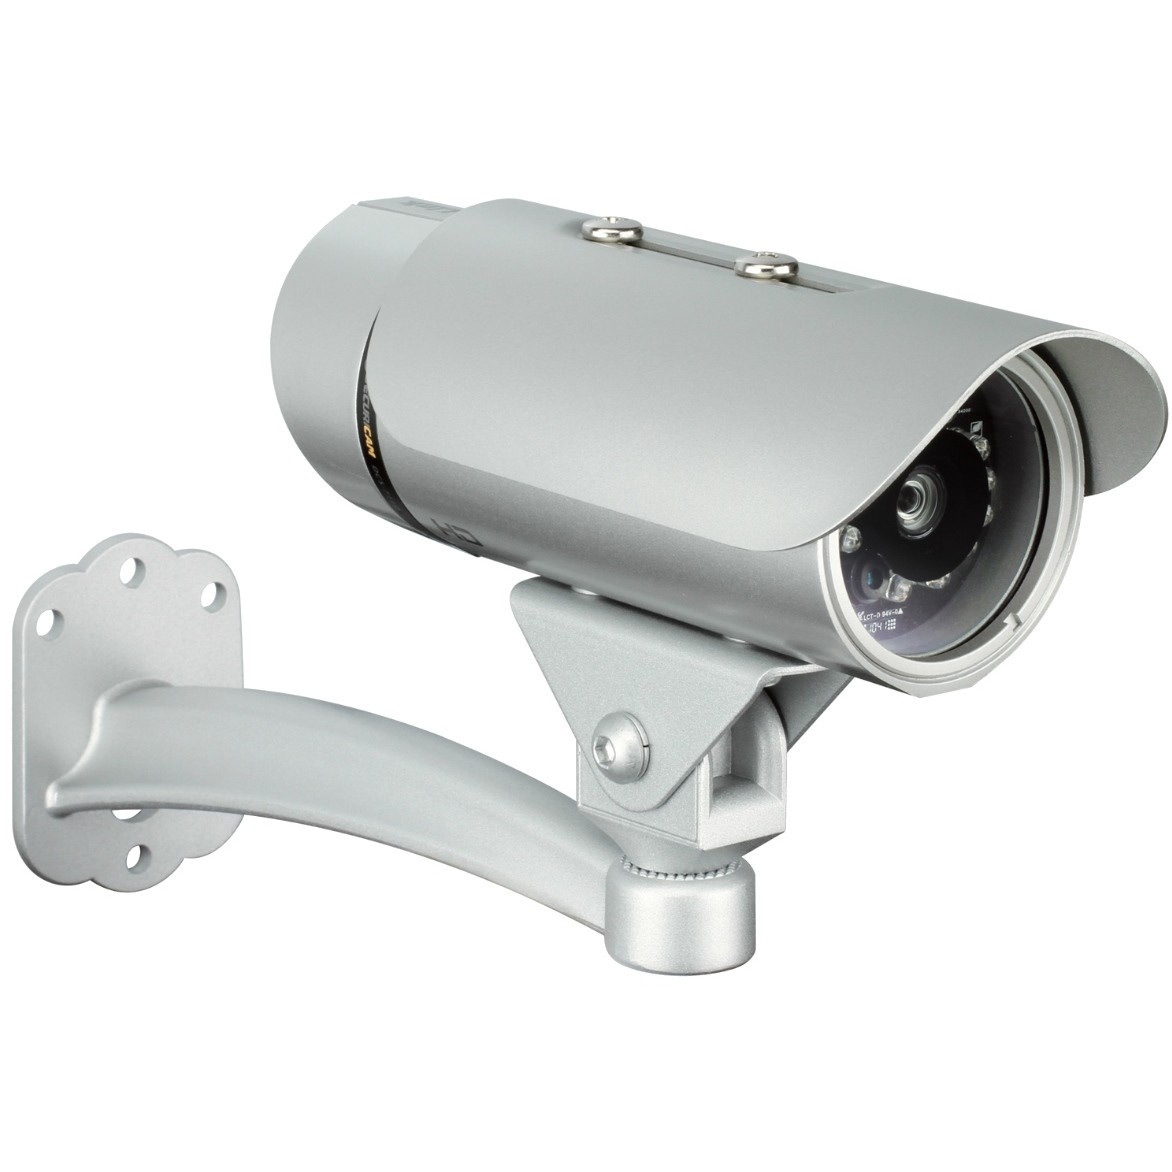 Стационарная видеокамера. Камера видеонаблюдения (Тип-1, ММС). D link DCS 7110. Камера видеонаблюдения TS-cav12.